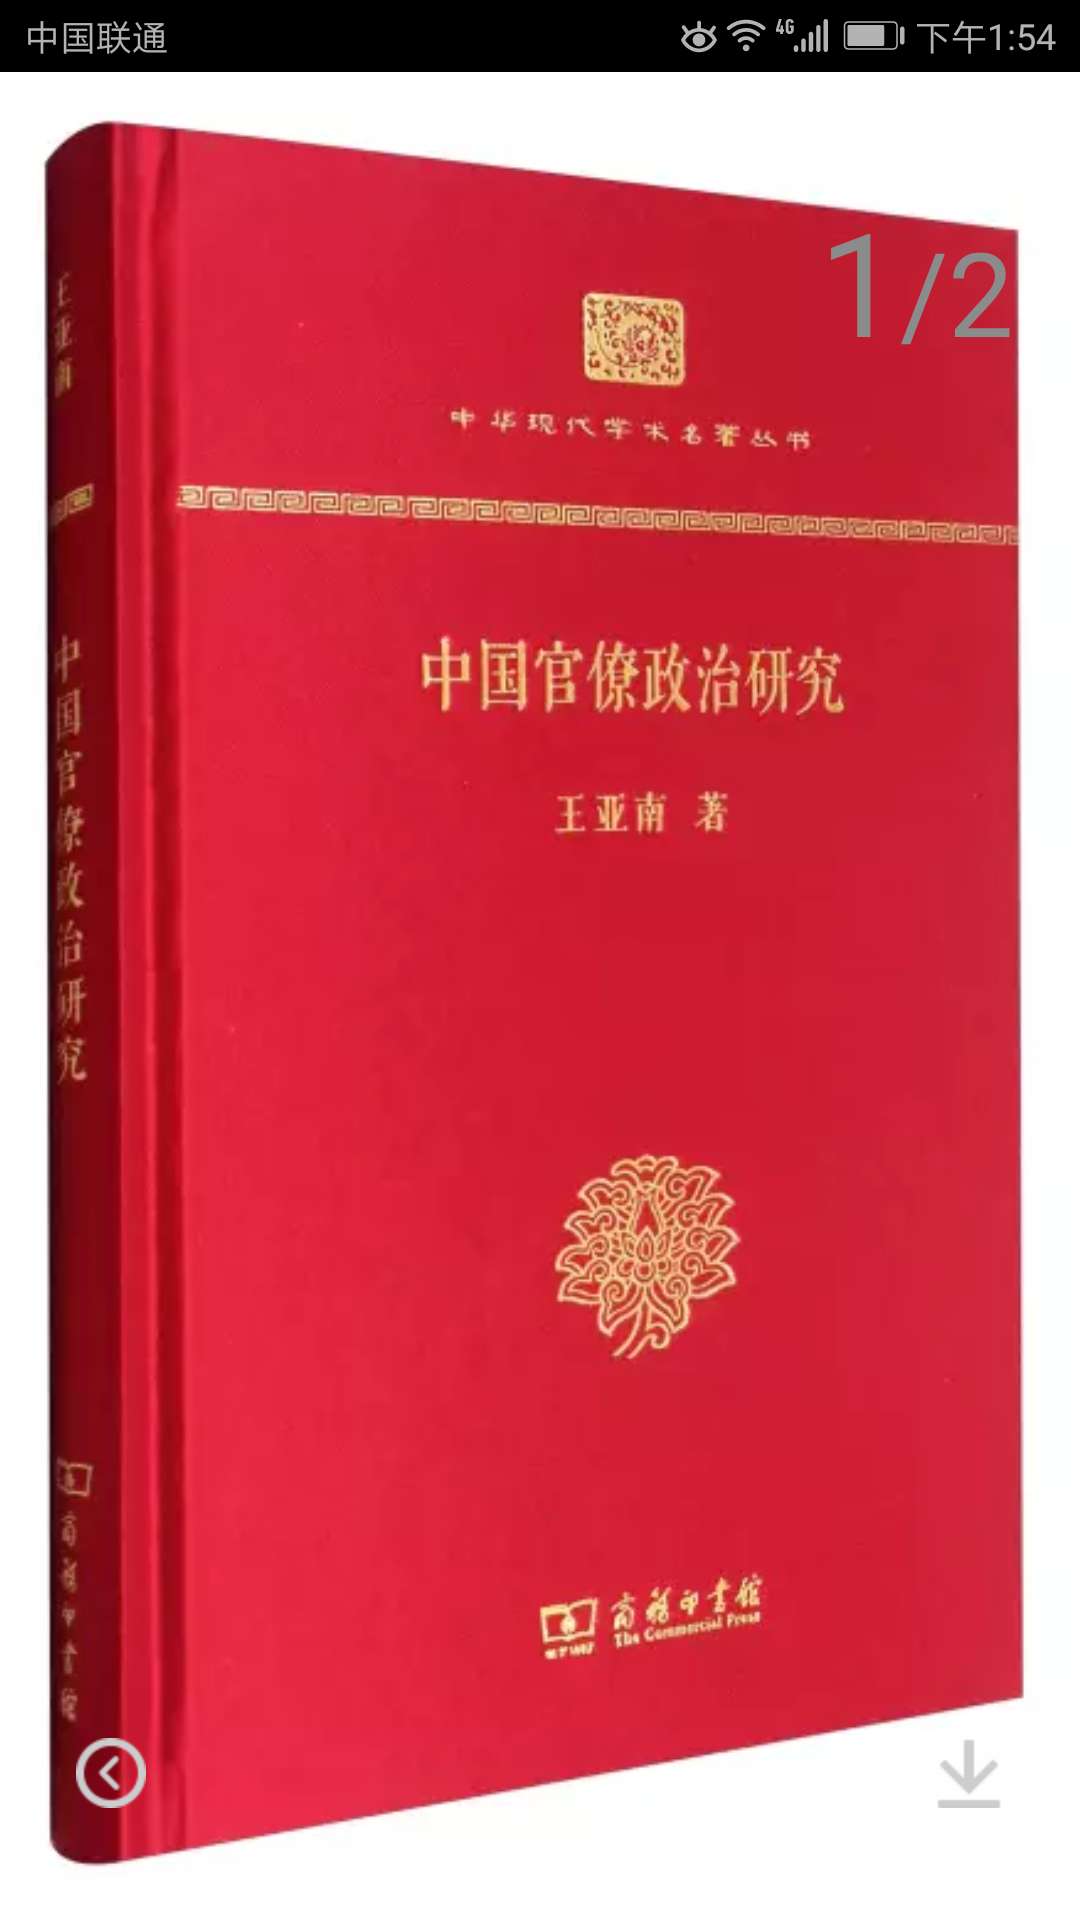 商务印书馆推出的中华现代学术名著丛书，精装大32开，书脊锁线纸质优良，排班印刷得体大方，活动期间价格实惠，送货速度快，非常满意。